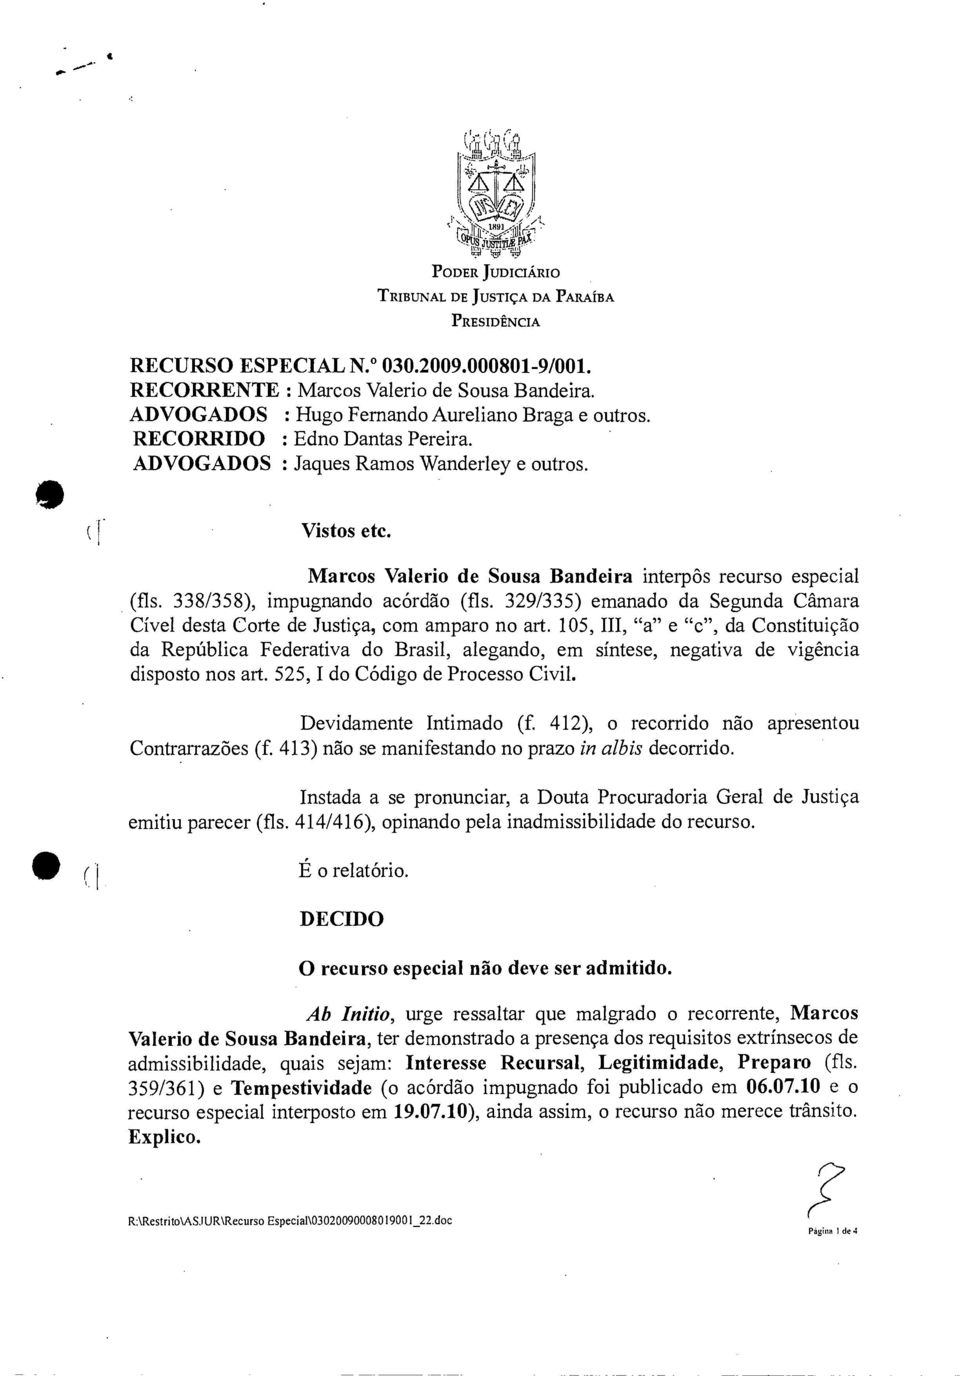 Marcos Valerio de Sousa Bandeira interpôs recurso especial (fls. 338/358), impugnando acórdão (fls. 329/335) emanado da Segunda Câmara Cível desta Corte de Justiça, com amparo no art.